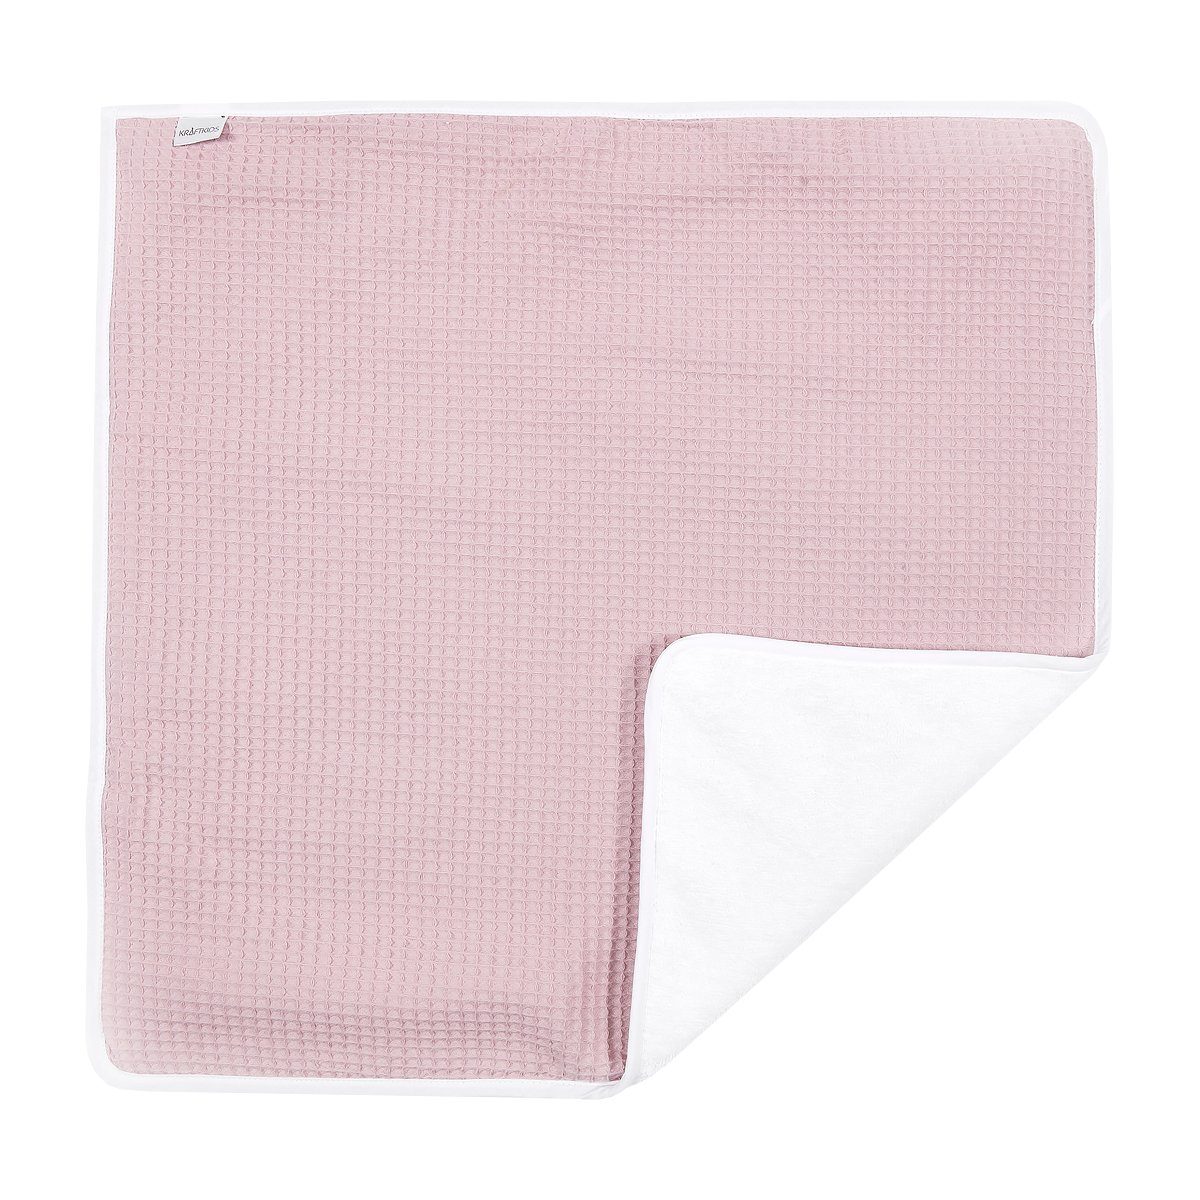 KraftKids Wickelauflage Waffel Piqué rosa, Wickelunterlage aus 3  Stoffsichten 100% Baumwolle, Innen wasserundurchlässig, faltbar auch für  Unterwegs